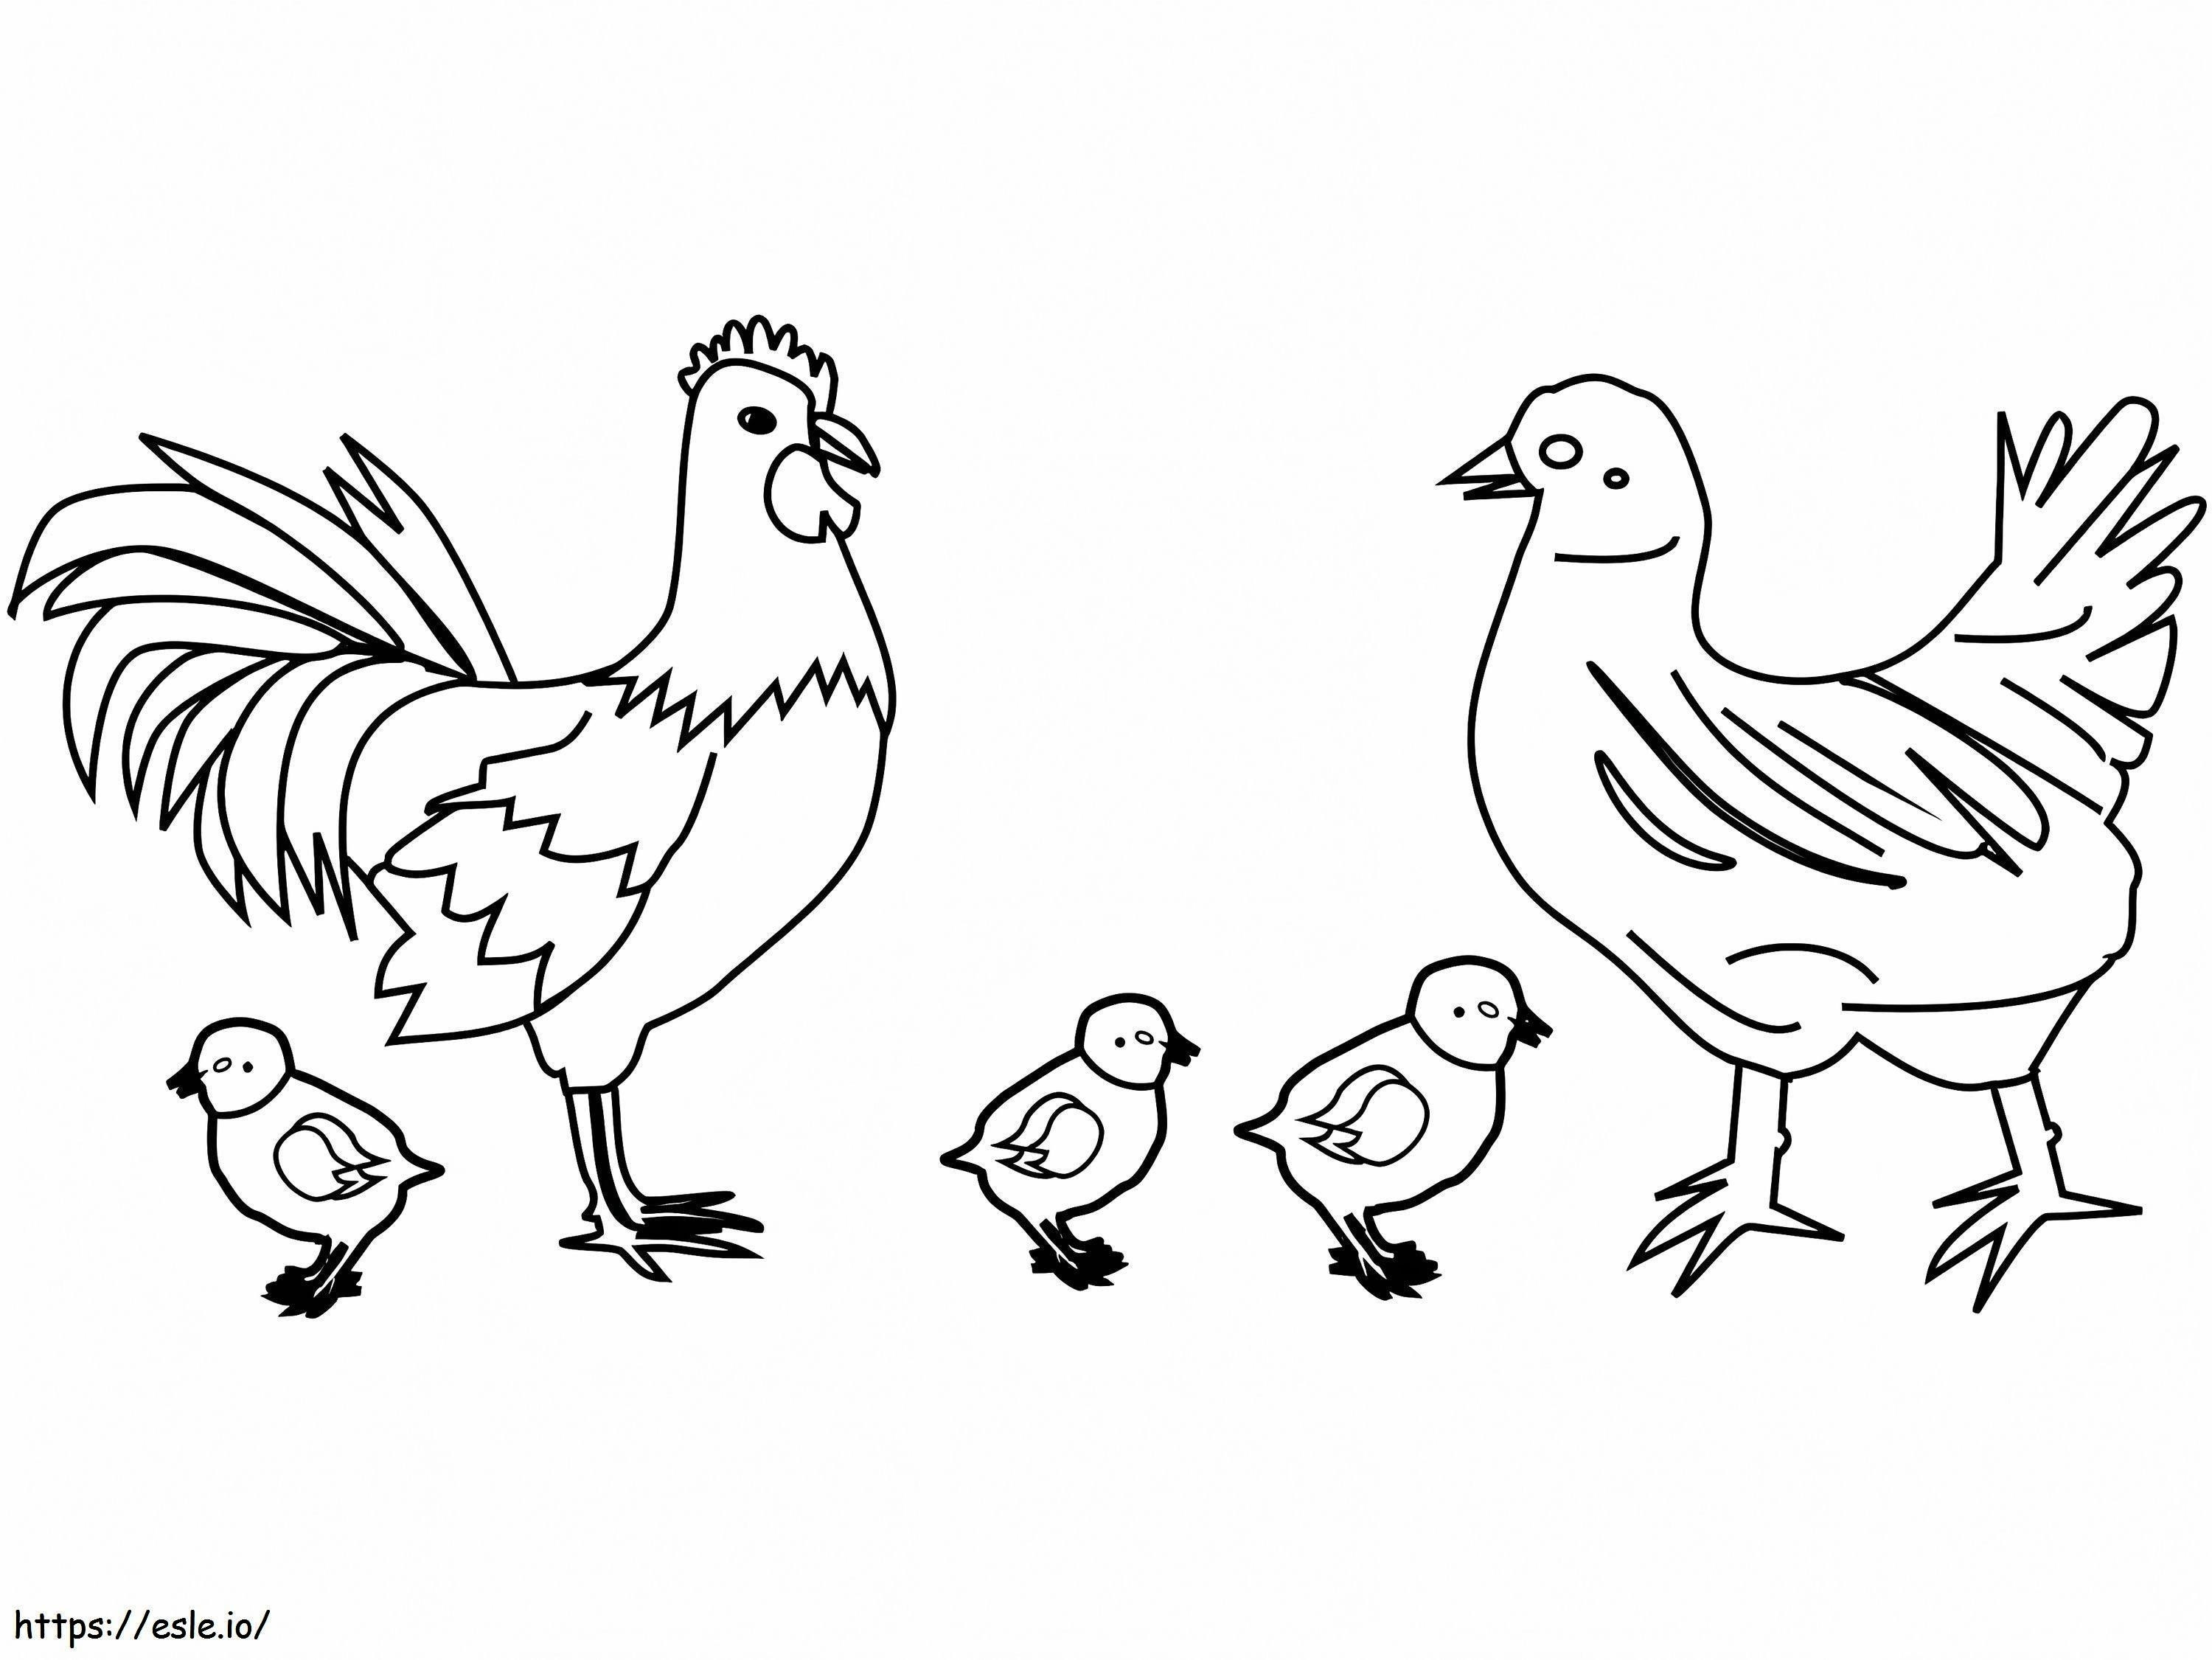 Tavuk Ailesi boyama